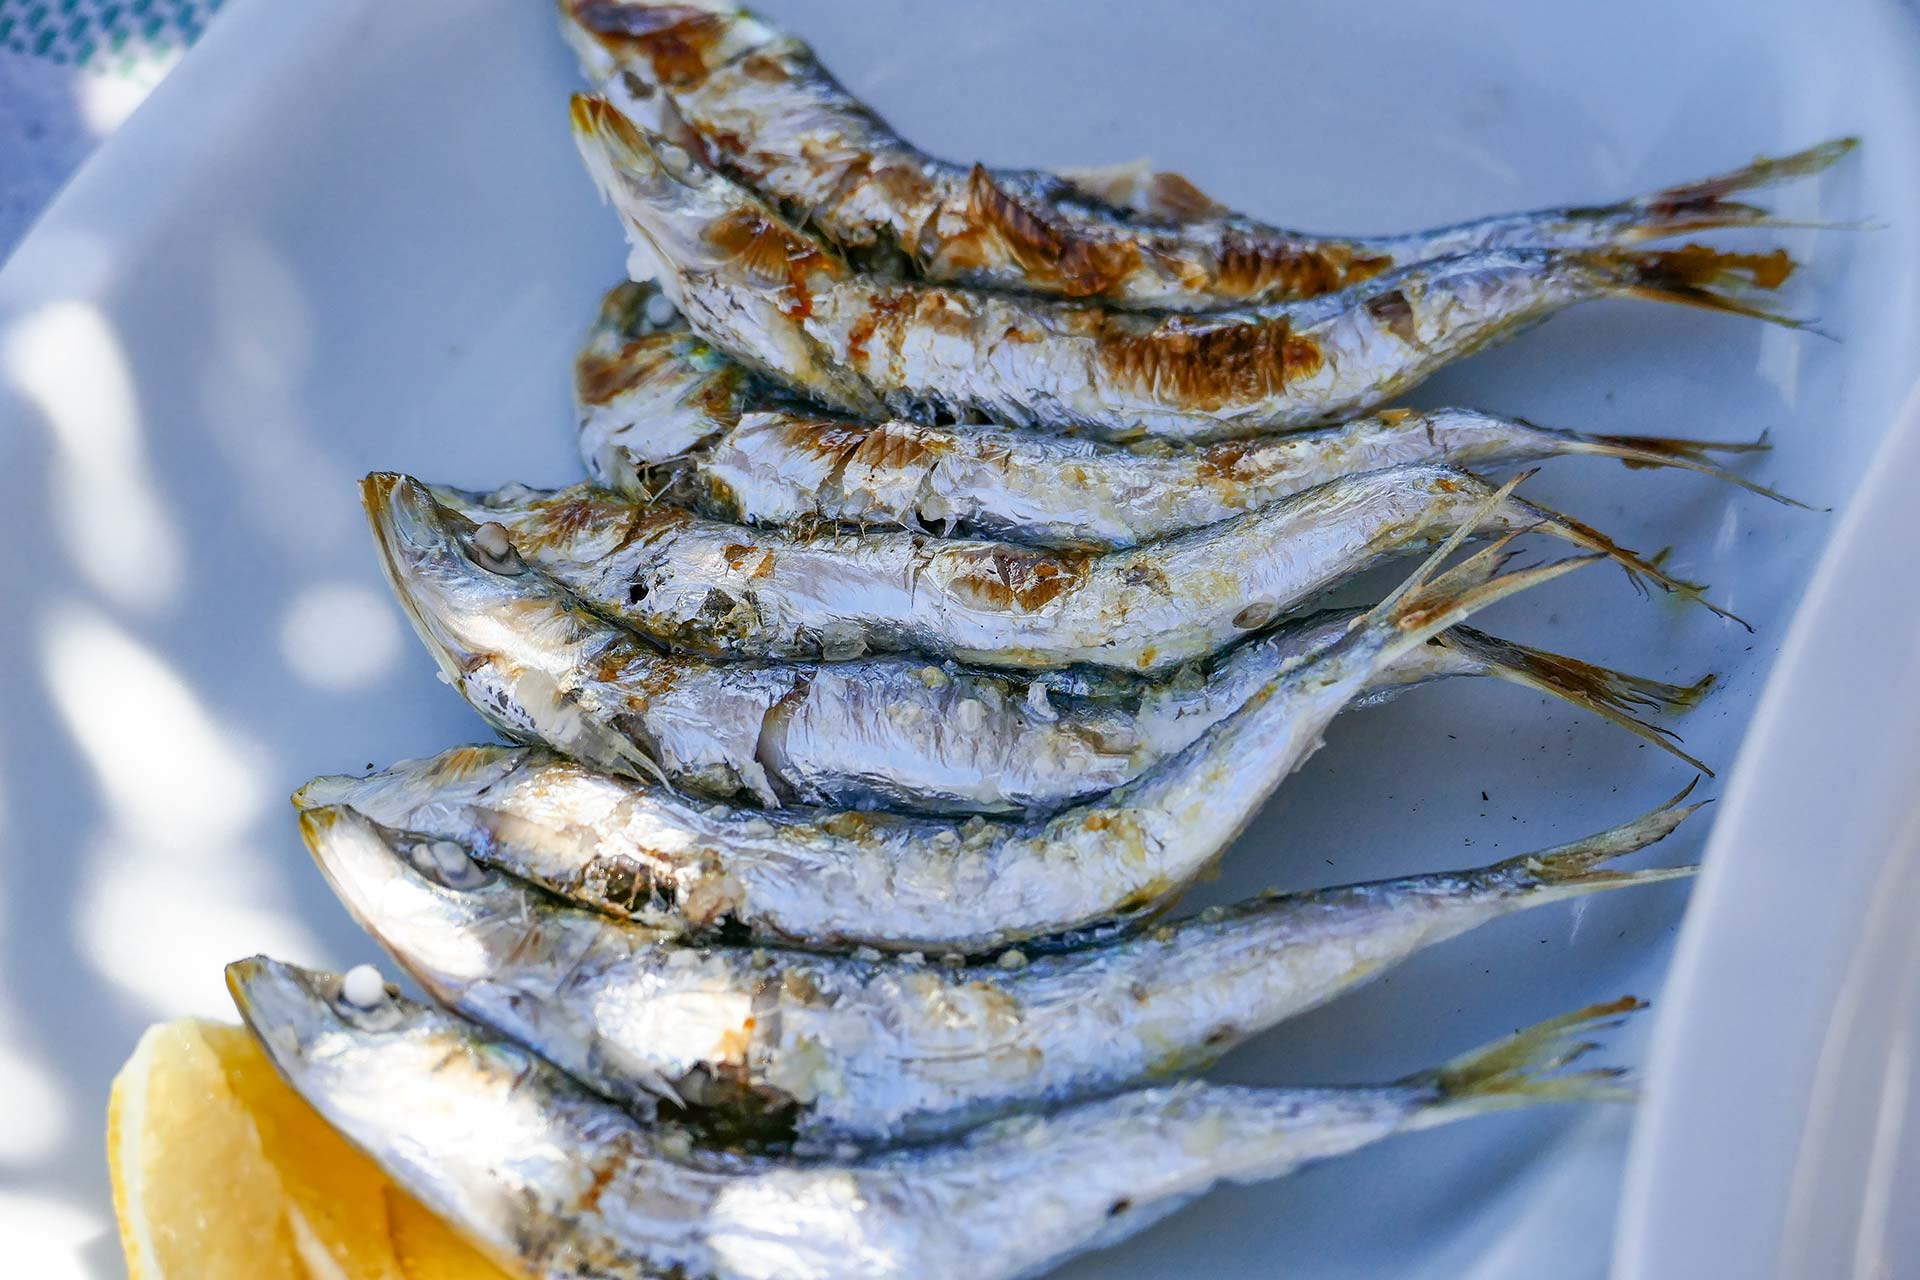 Freshly grilled sardines reign supreme